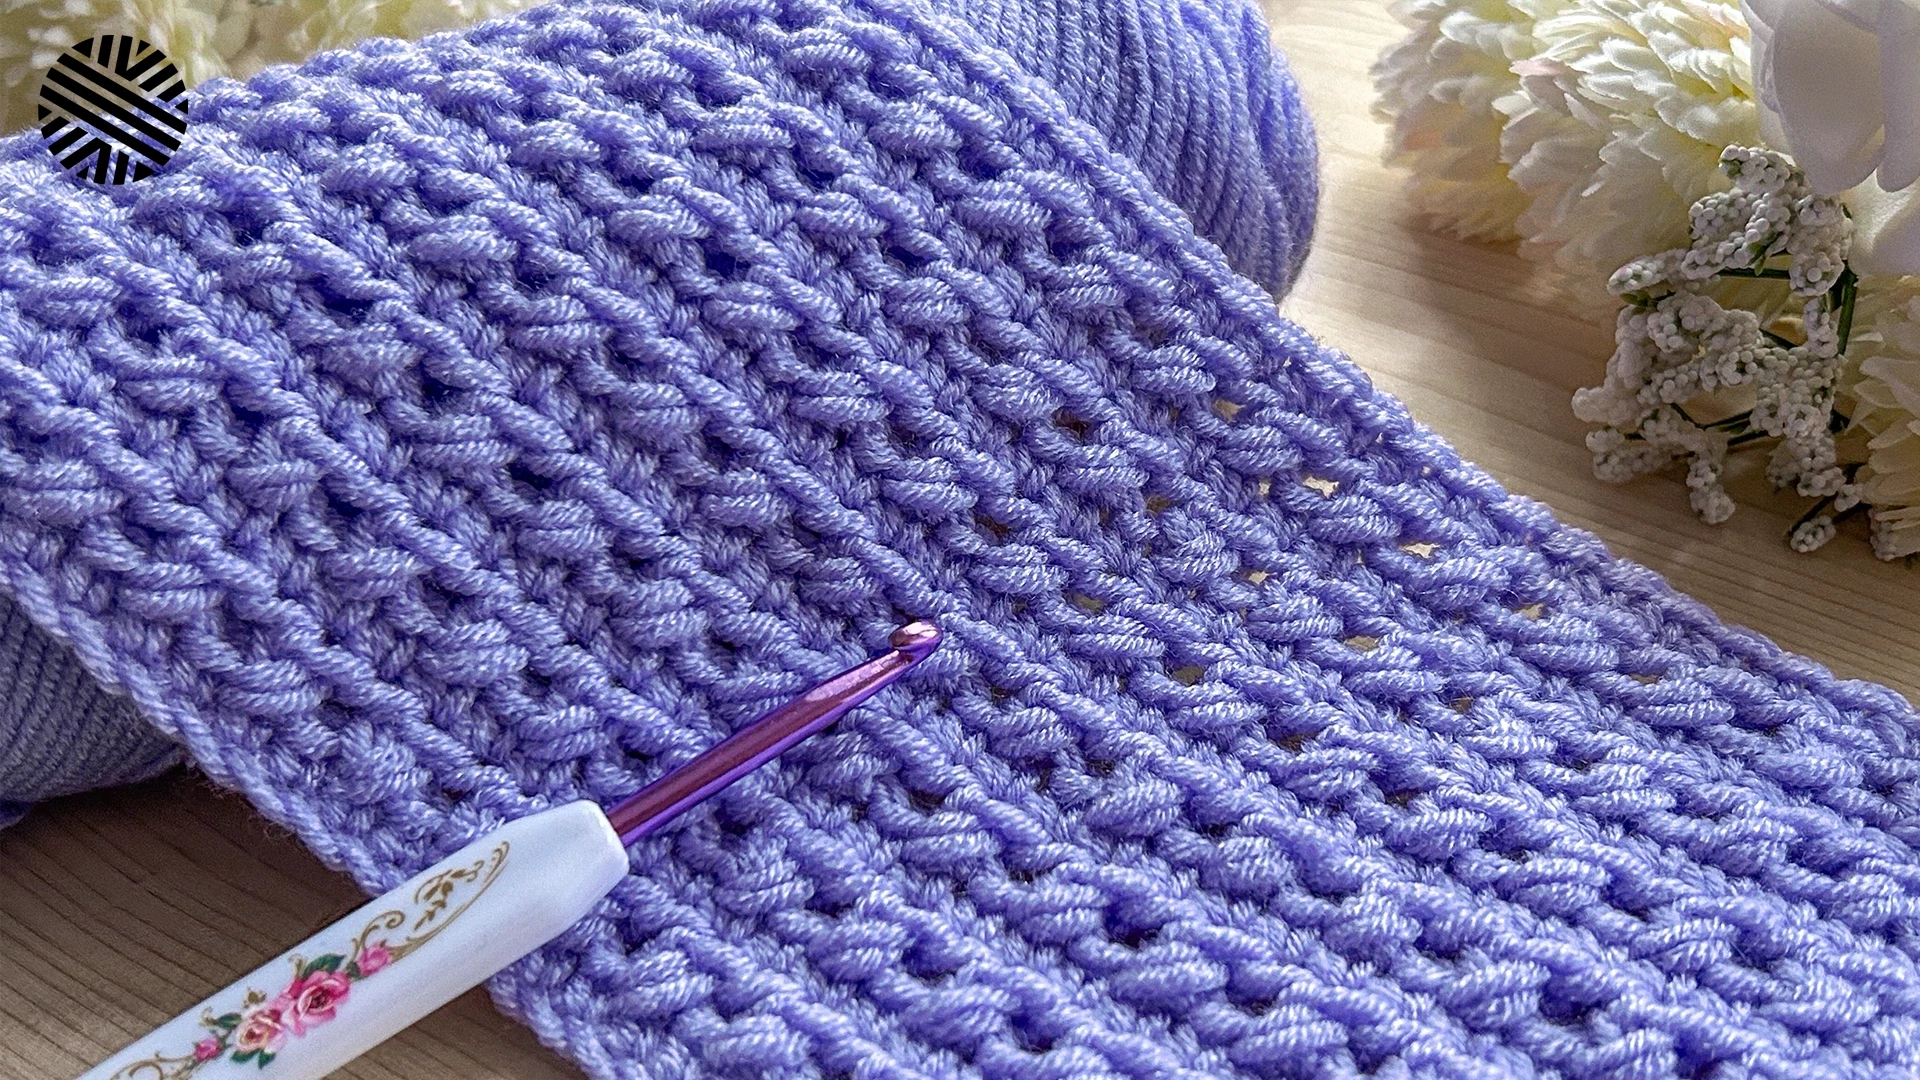 Easy Crochet Patterns for Beginners - Easy Crochet